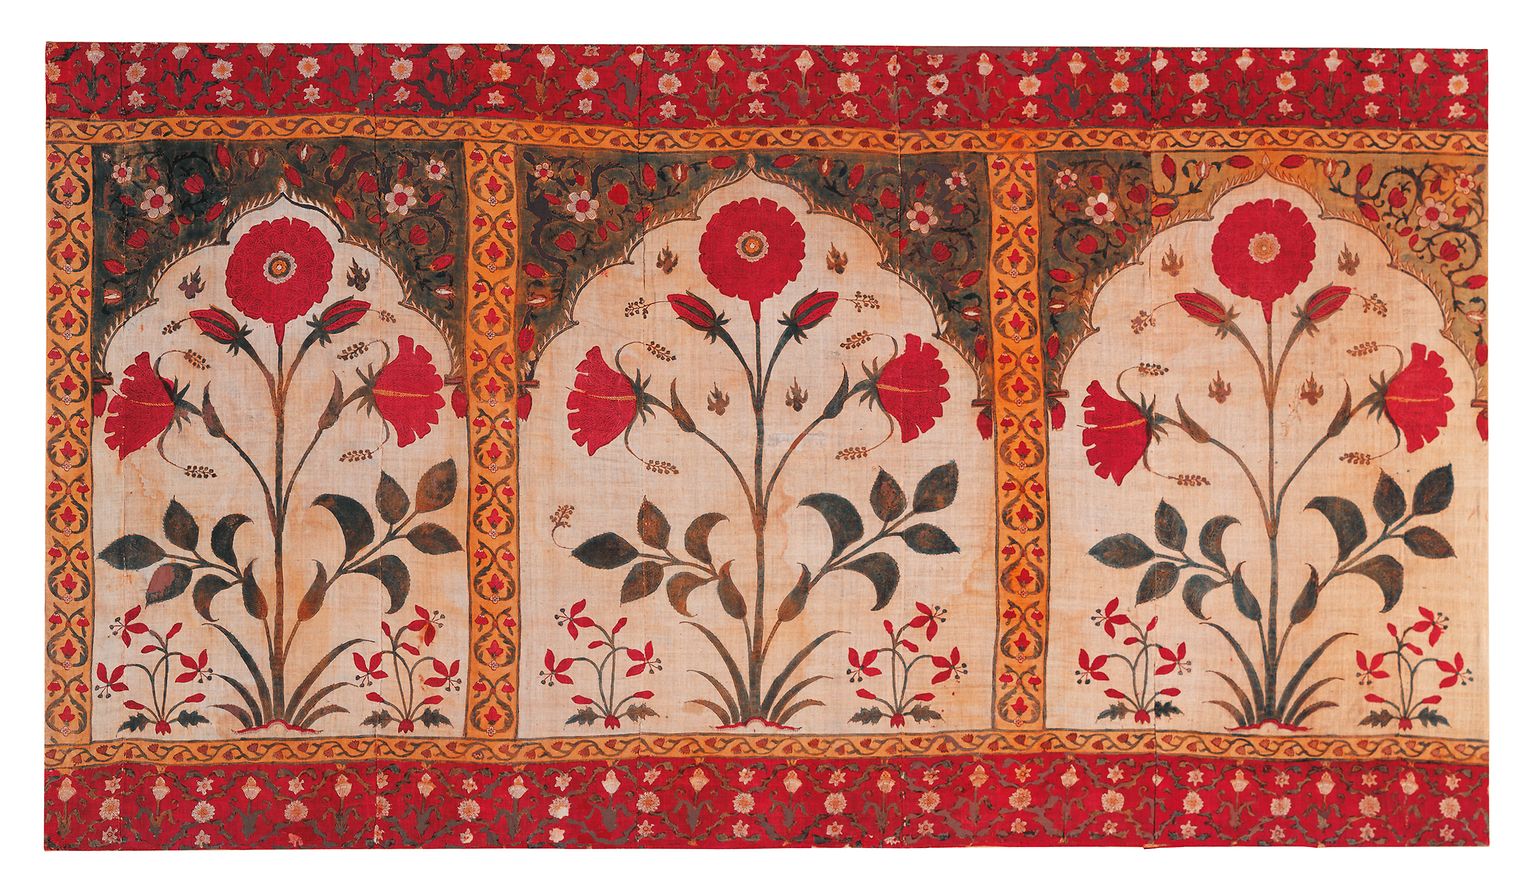 Indisches Baumwolltuch aus dem 18. Jahrhundert